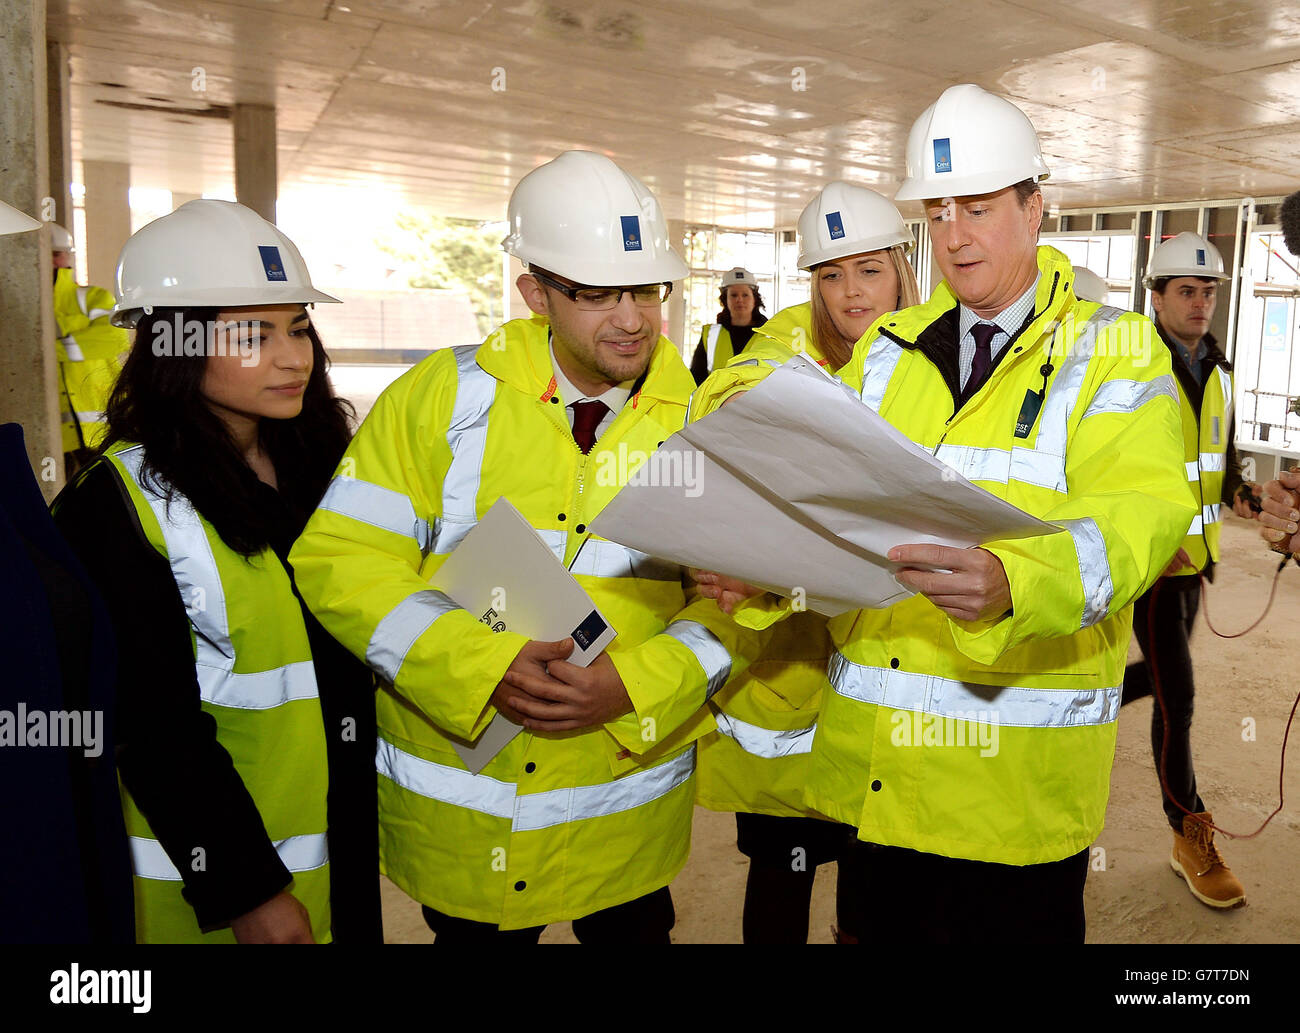 Il primo ministro David Cameron parla con Alex Elias (centro) e il suo fidanzato Nivine El-Sidawi (sinistra), in piedi in quello che sarà il loro appartamento quando completato entro la fine di quest'anno, durante una visita ad un cantiere in cui stanno costruendo appartamenti privati a Isleworth, Londra occidentale. Foto Stock